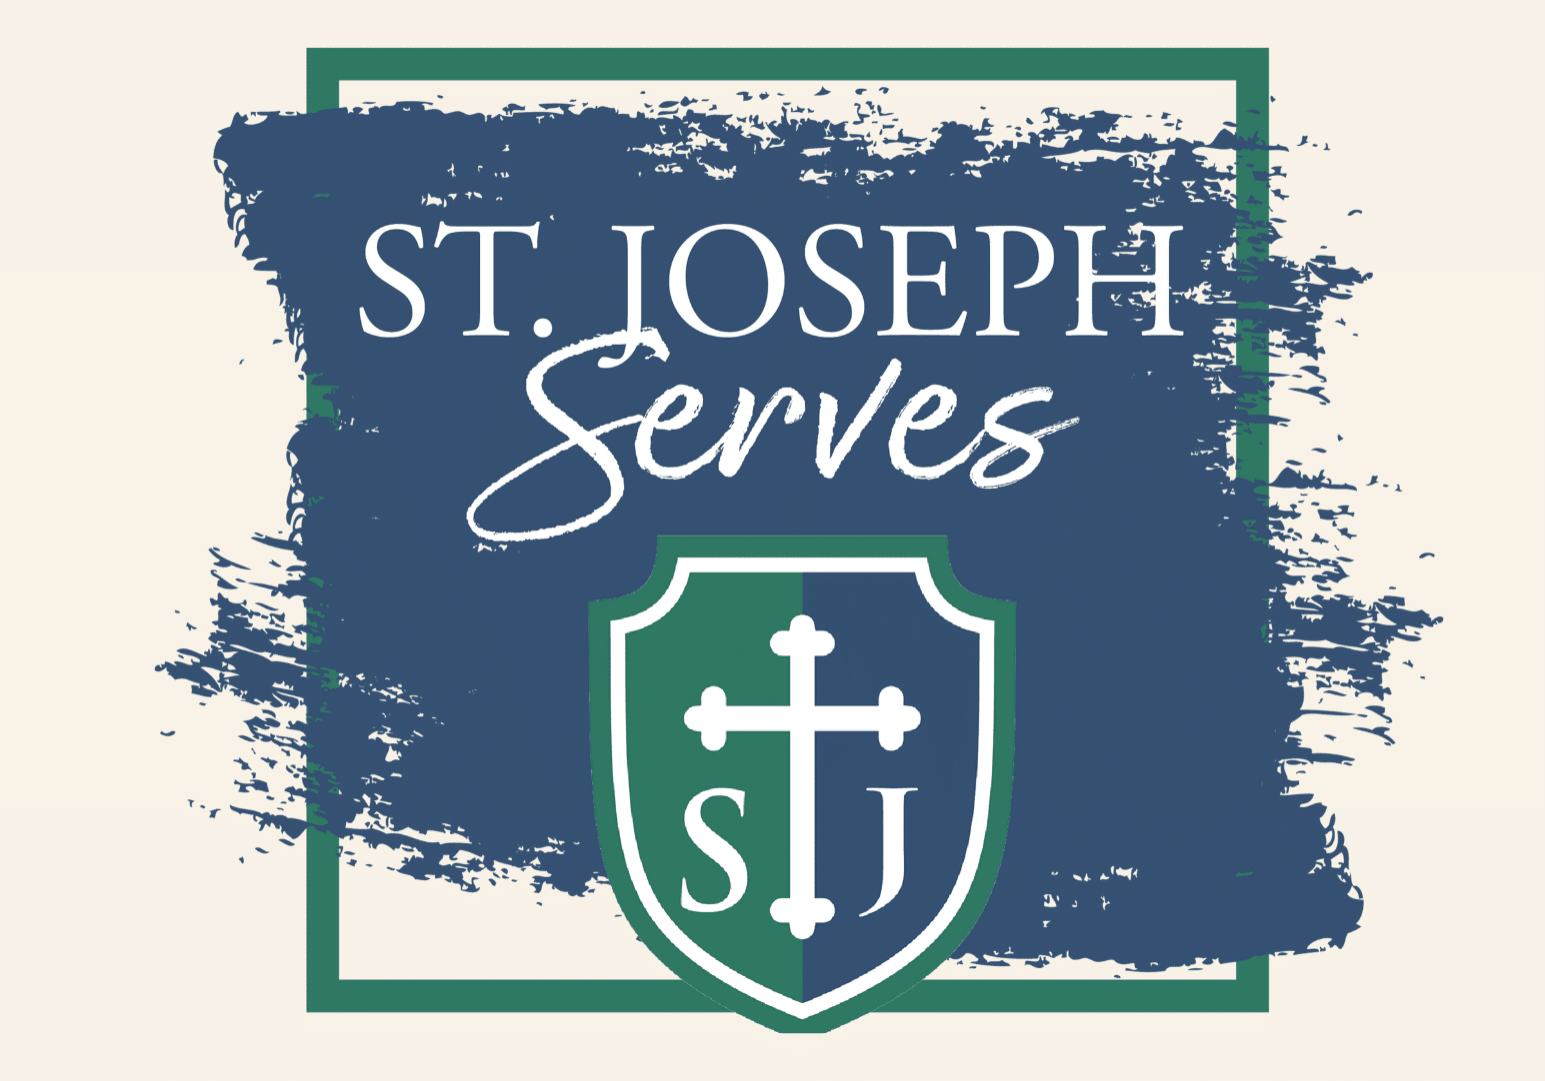 St. Joseph Serves Flyer Cover